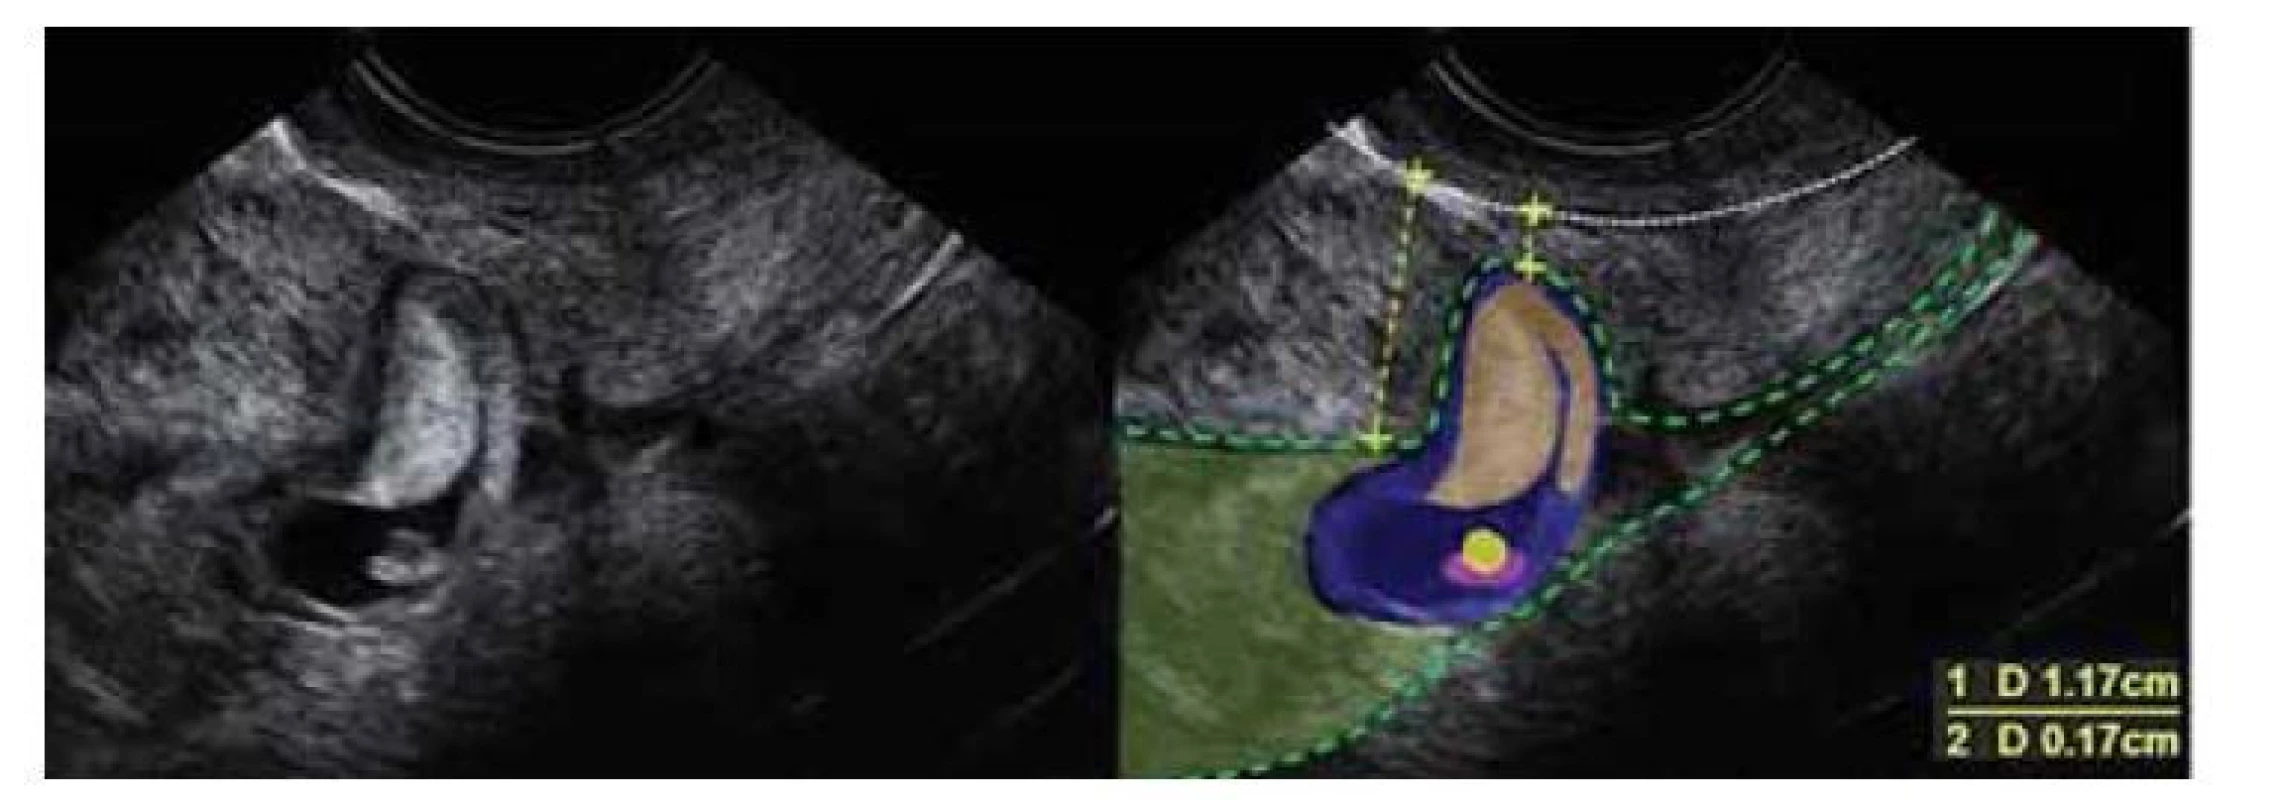 Ultrazvukový nález gravidity gestačního týdne 6+2 v jizvě děložní.
Atypicky nízko lokalizovaná gravidita. Prázdná horní polovina dutiny děložní.
Ztenčelé myometrium v místě nidace plodového vejce. Standardní tlouštka
stěny 1,7 cm, ztenčelé myometrium jizvě 1,7 mm. Patrné tvořící se chorion
frondosum v místě jizvy.<br>
Fig. 2. Ultrasound finding of gestational week 6+2 pregnancy in a uterine scar.
Atypically low localized pregnancy. The empty upper half of the uterine cavity.
Thinned myometrium at the site of fetal egg nidation. Standard wall thickness is
1.7 cm, and thinned myometrium scar is 1.7 mm. Noticeable chorion frondosum
forming at the site of the scar.